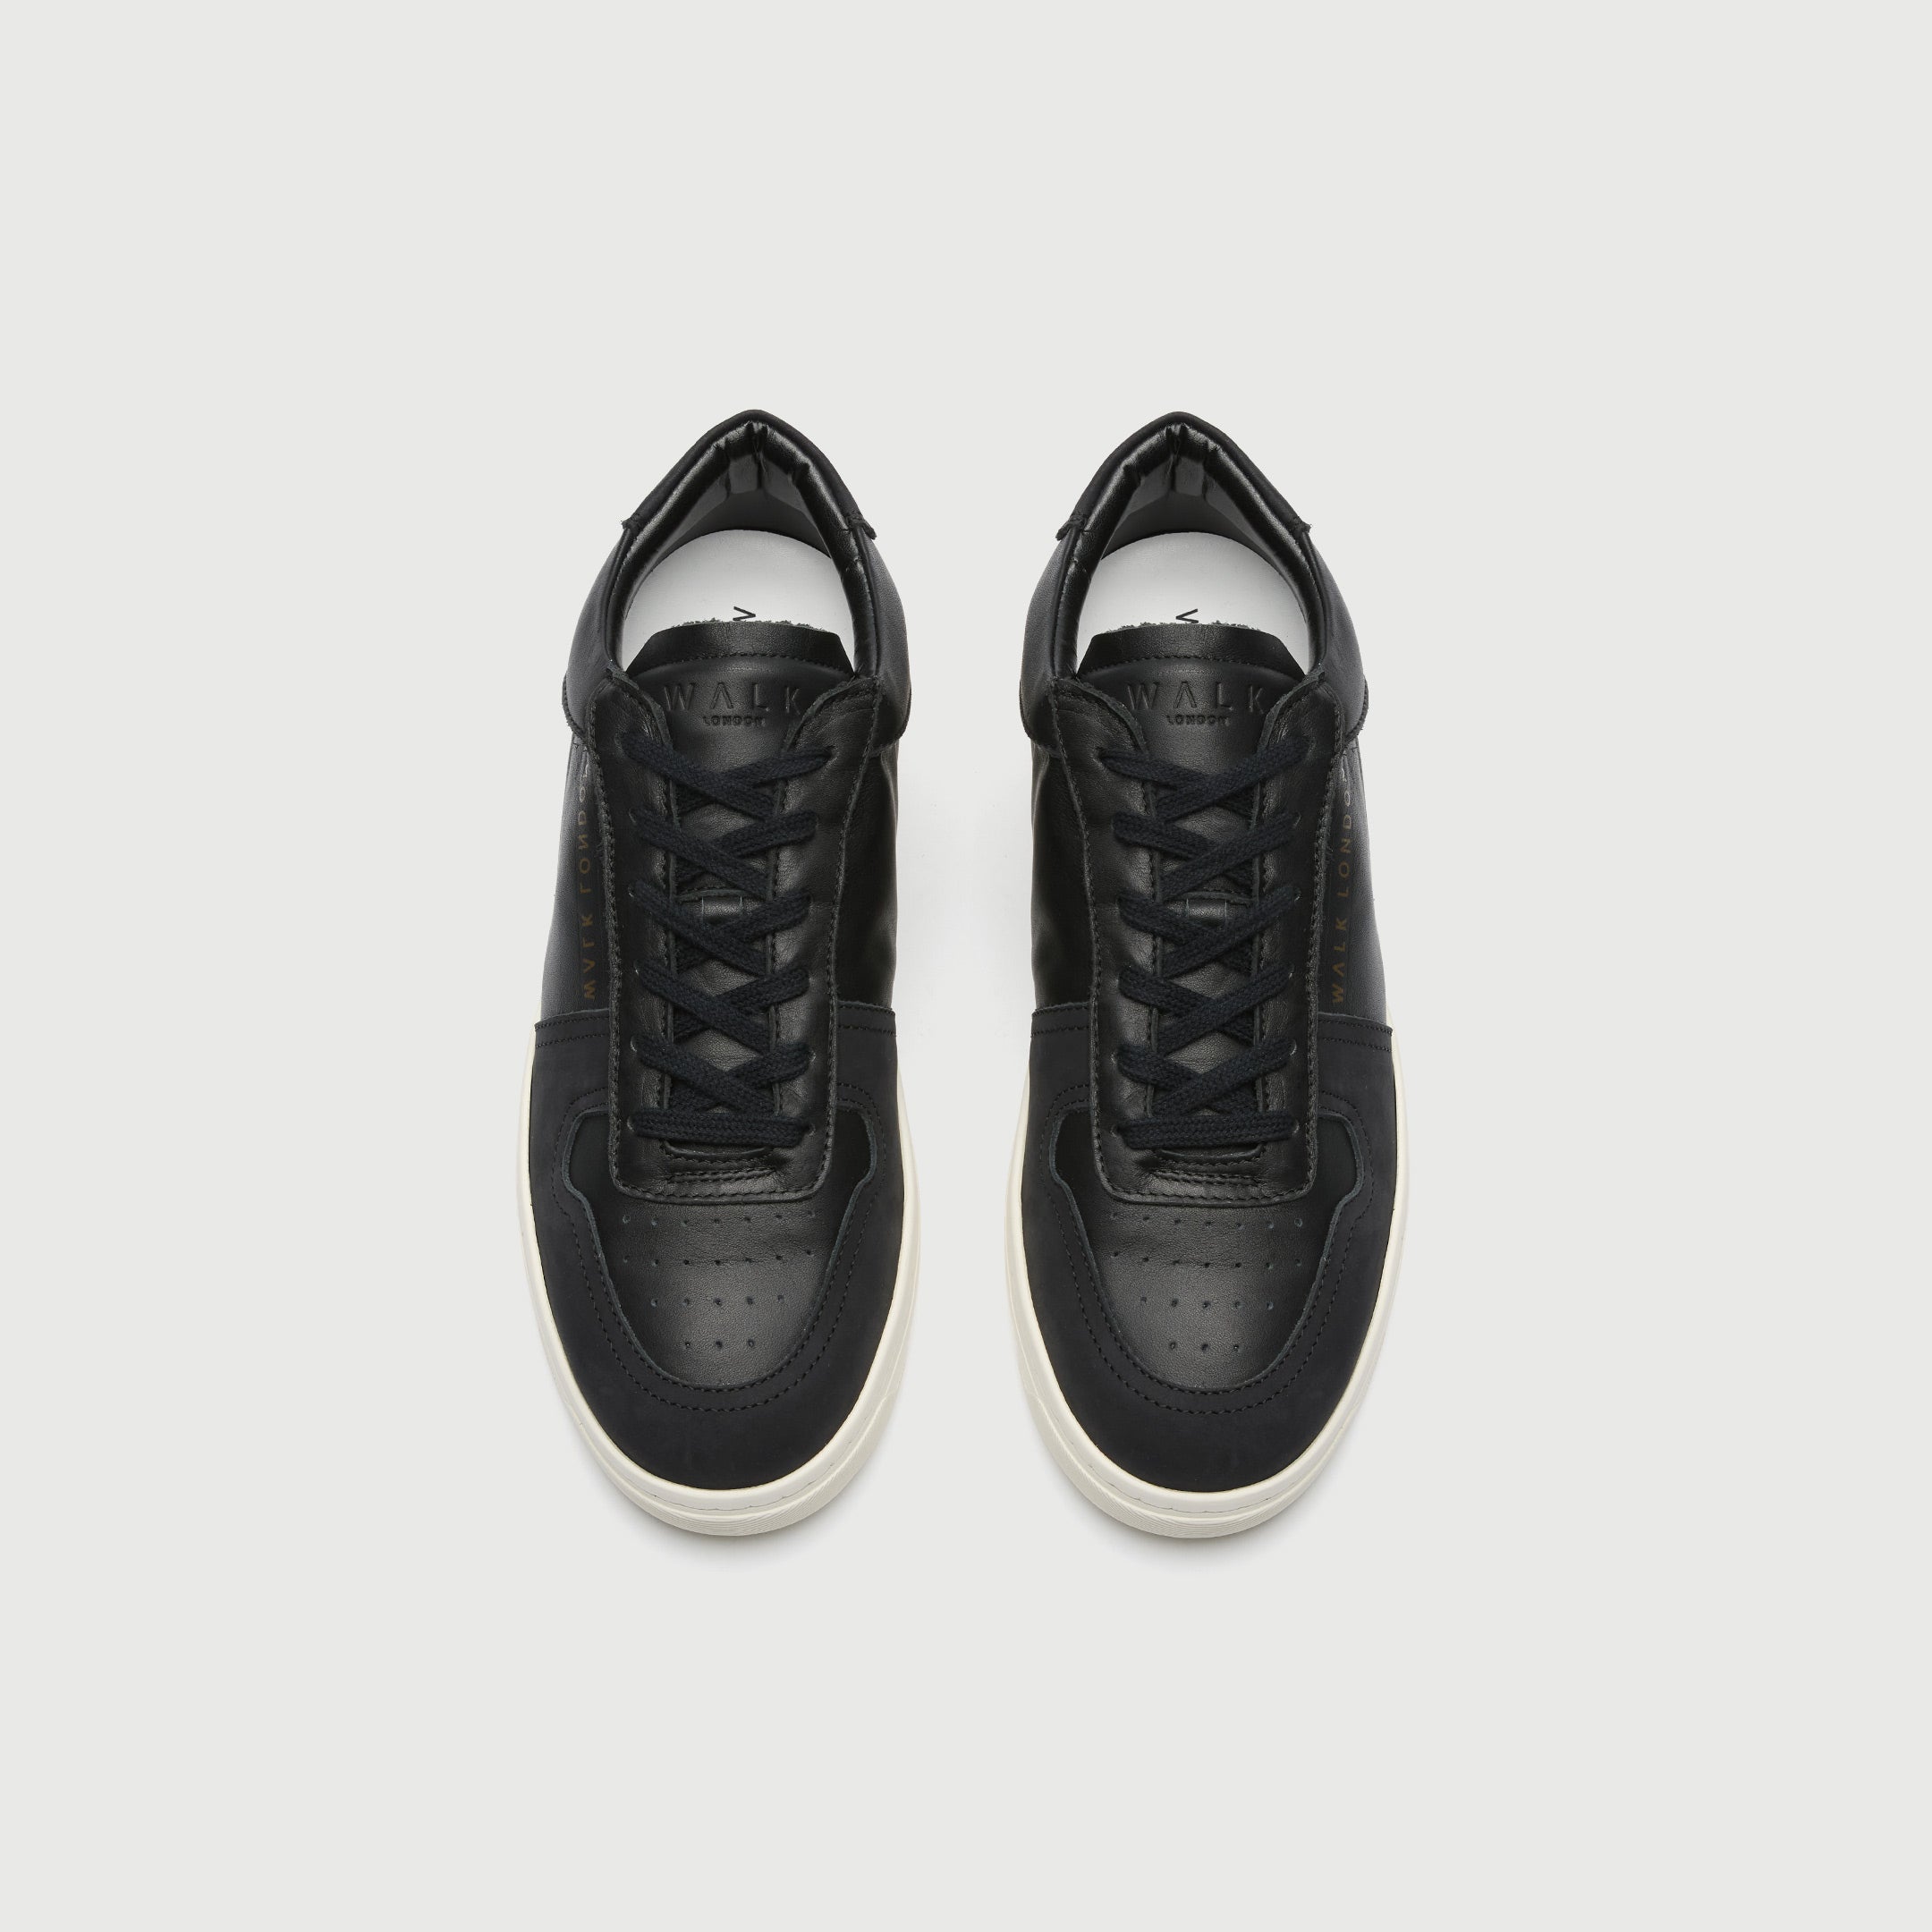 WALK London Mens Neo Sneaker in Black Leather